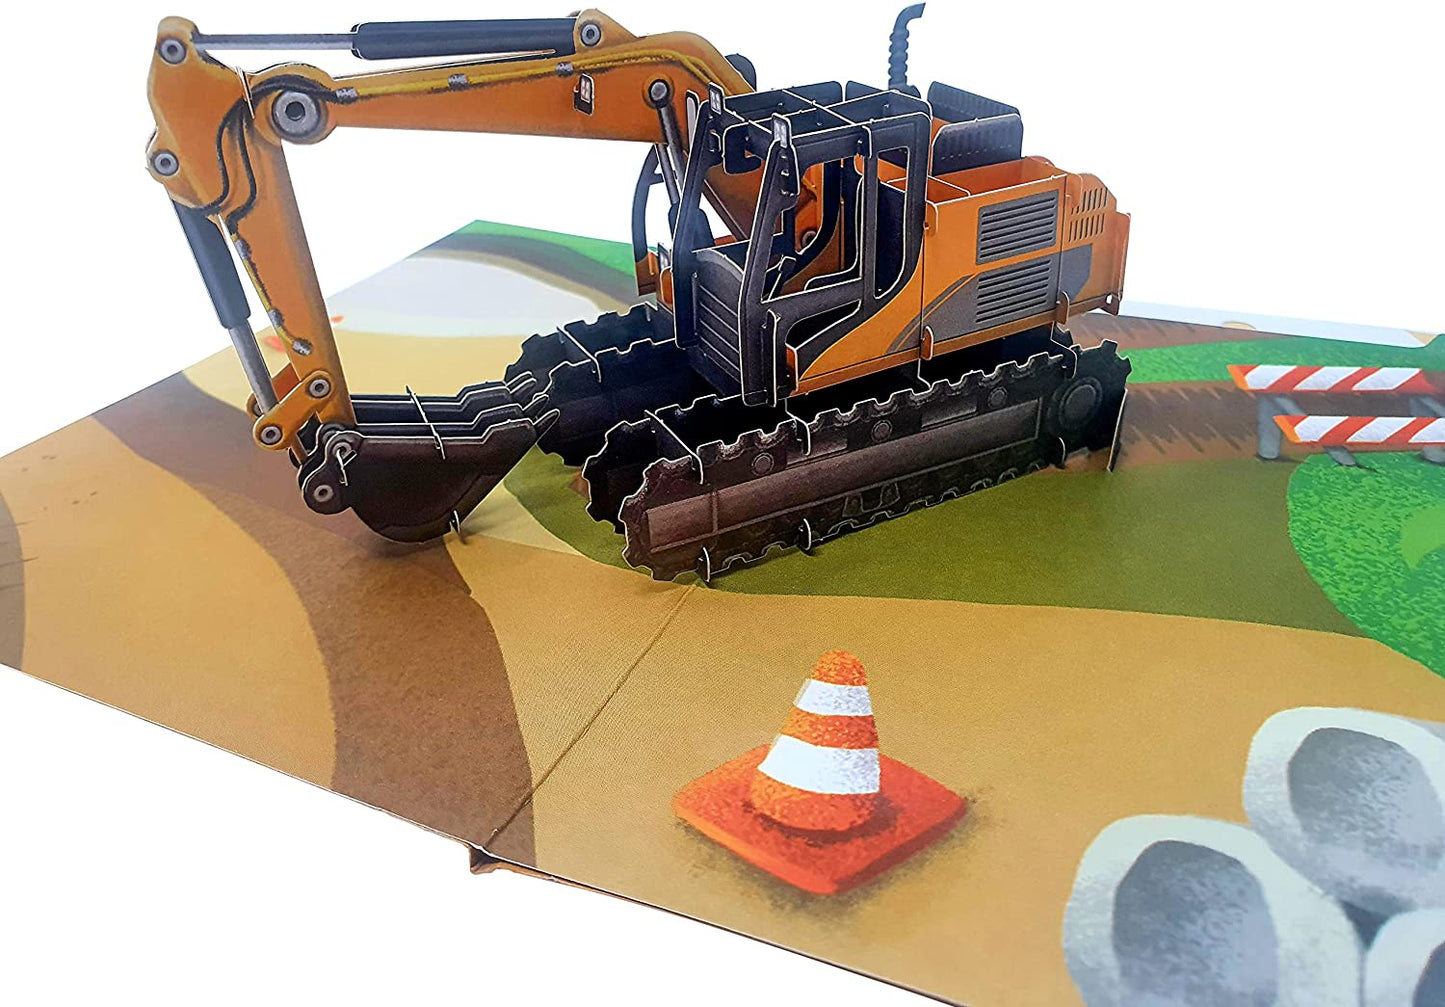 Builder Digger Excavator 3D Pop Up Card